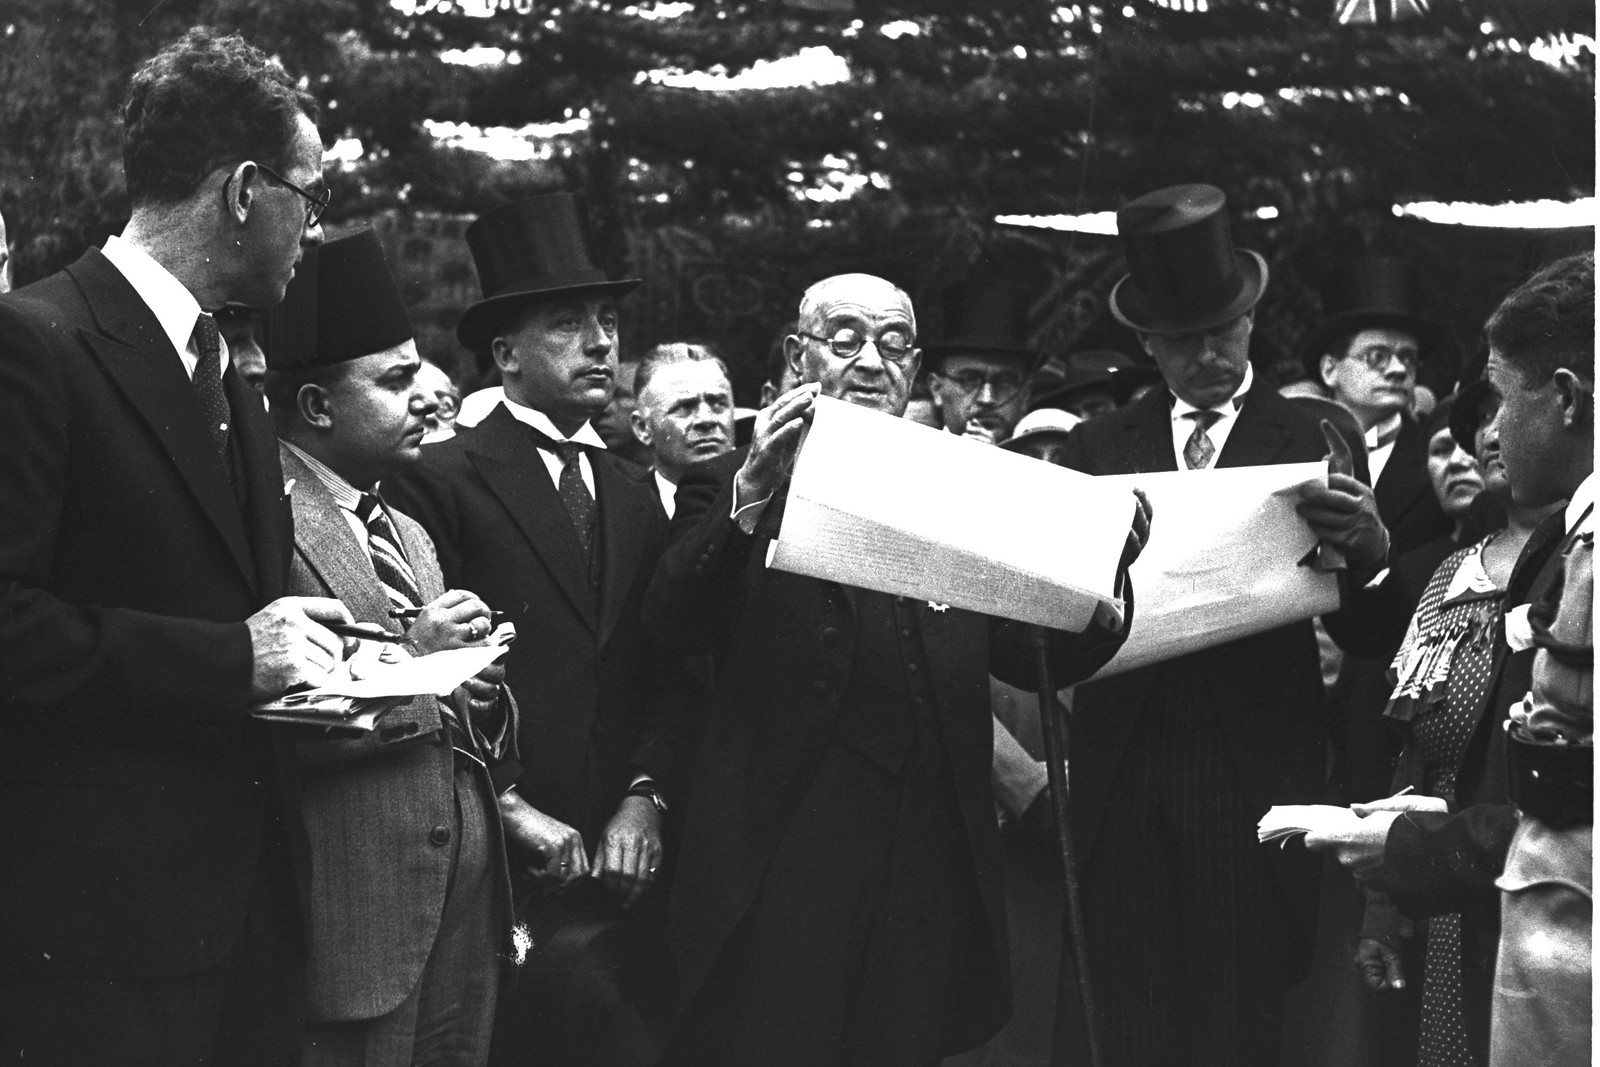 1935. Церемония открытия улицы «Кинг Джордж» в Тель-Авиве. На фото мэр Меир Дизенгоф выступает с речью